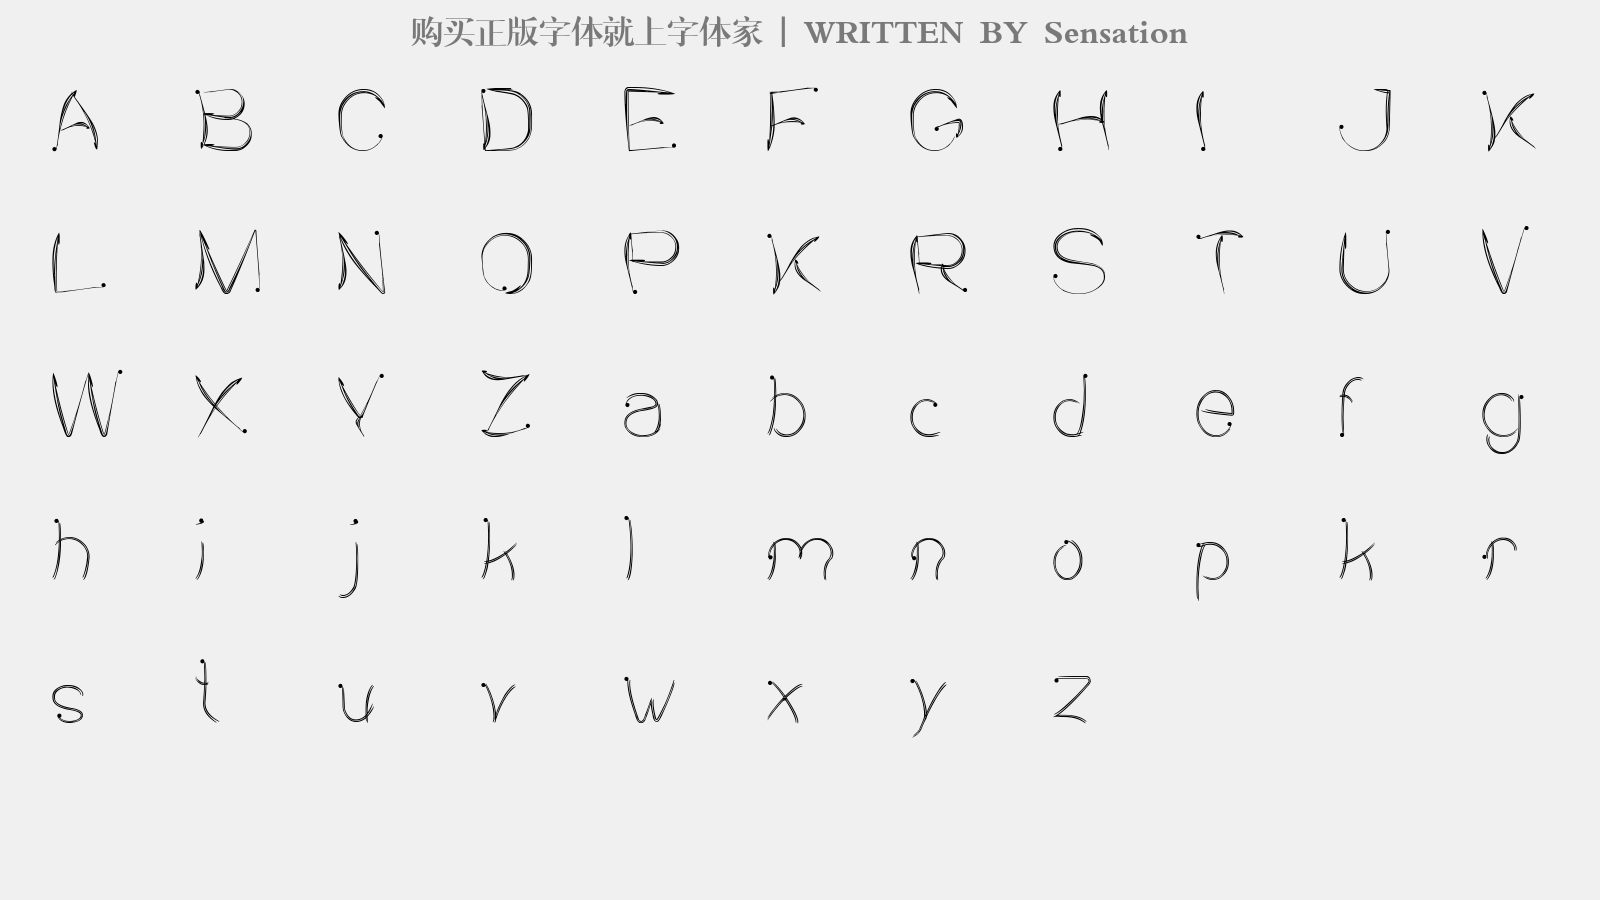 Sensation - 大写字母/小写字母/数字